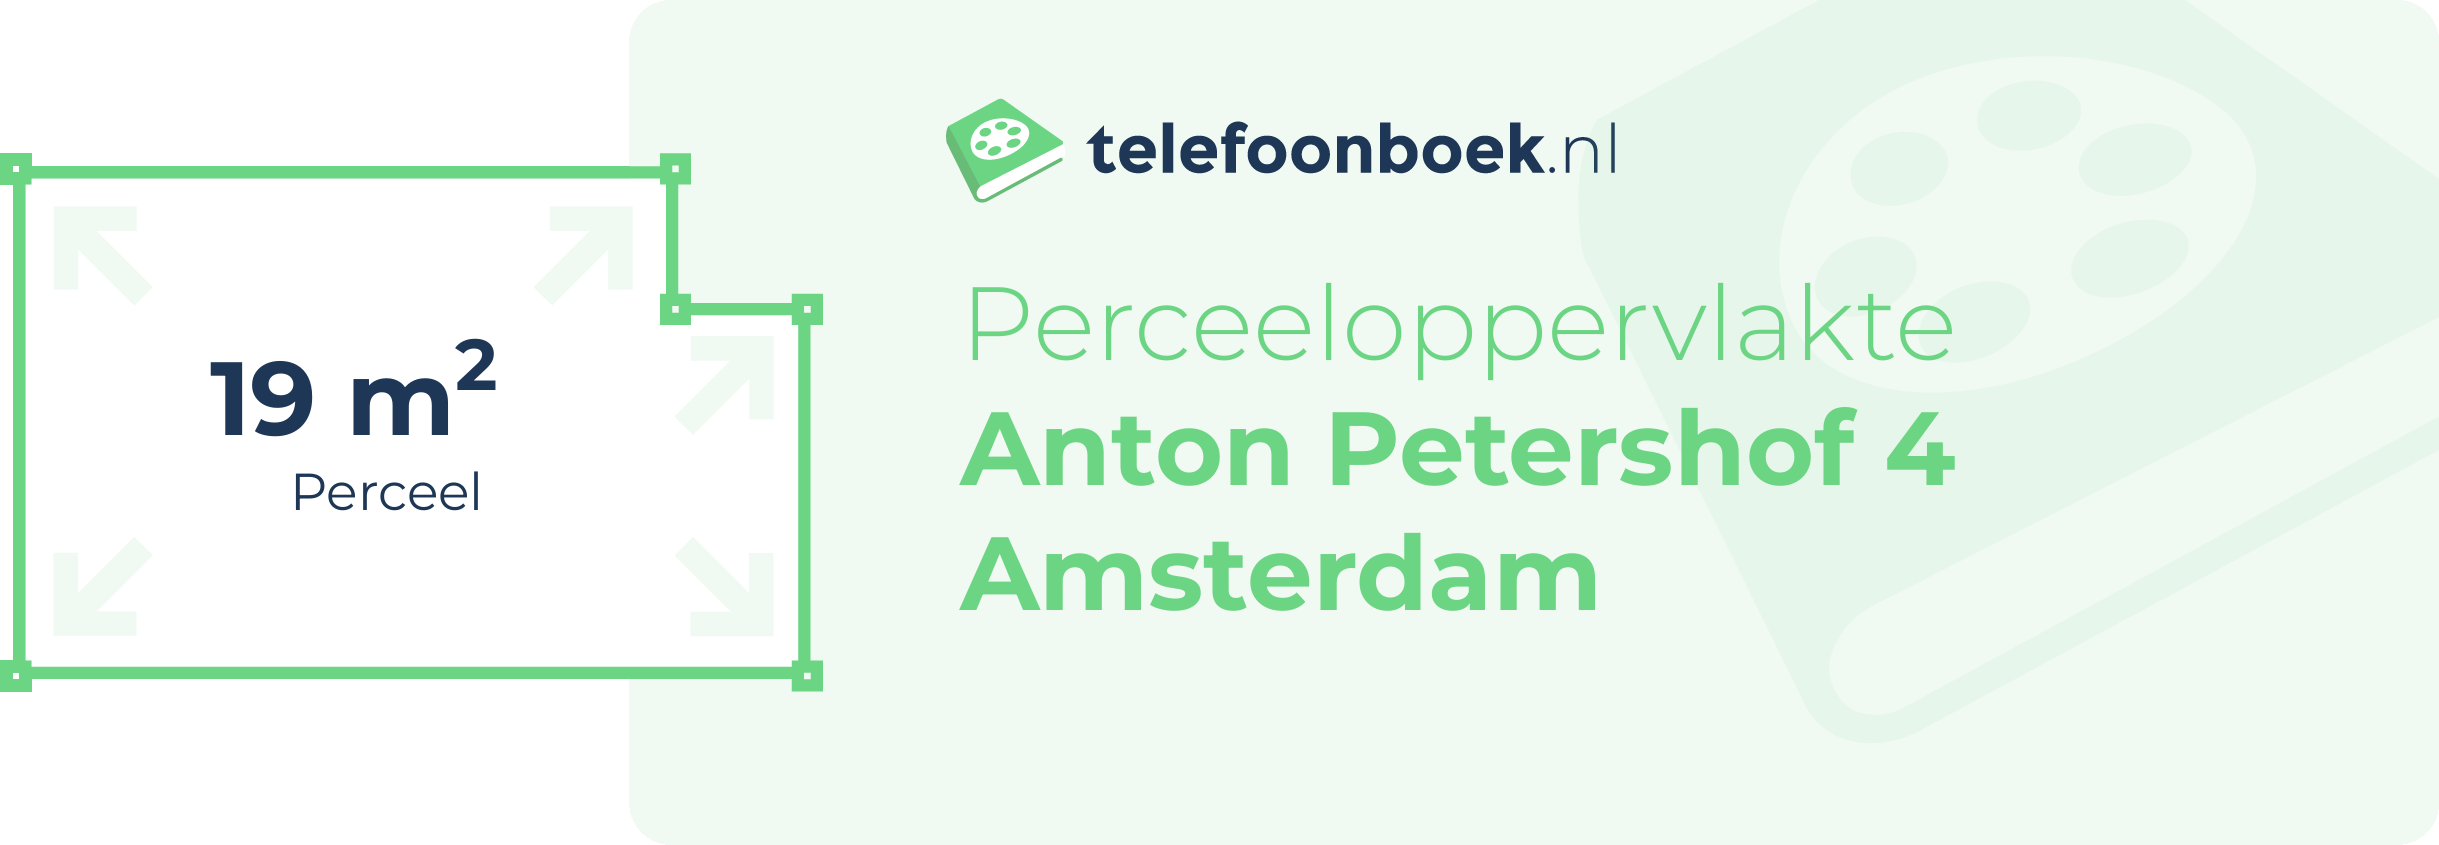 Perceeloppervlakte Anton Petershof 4 Amsterdam